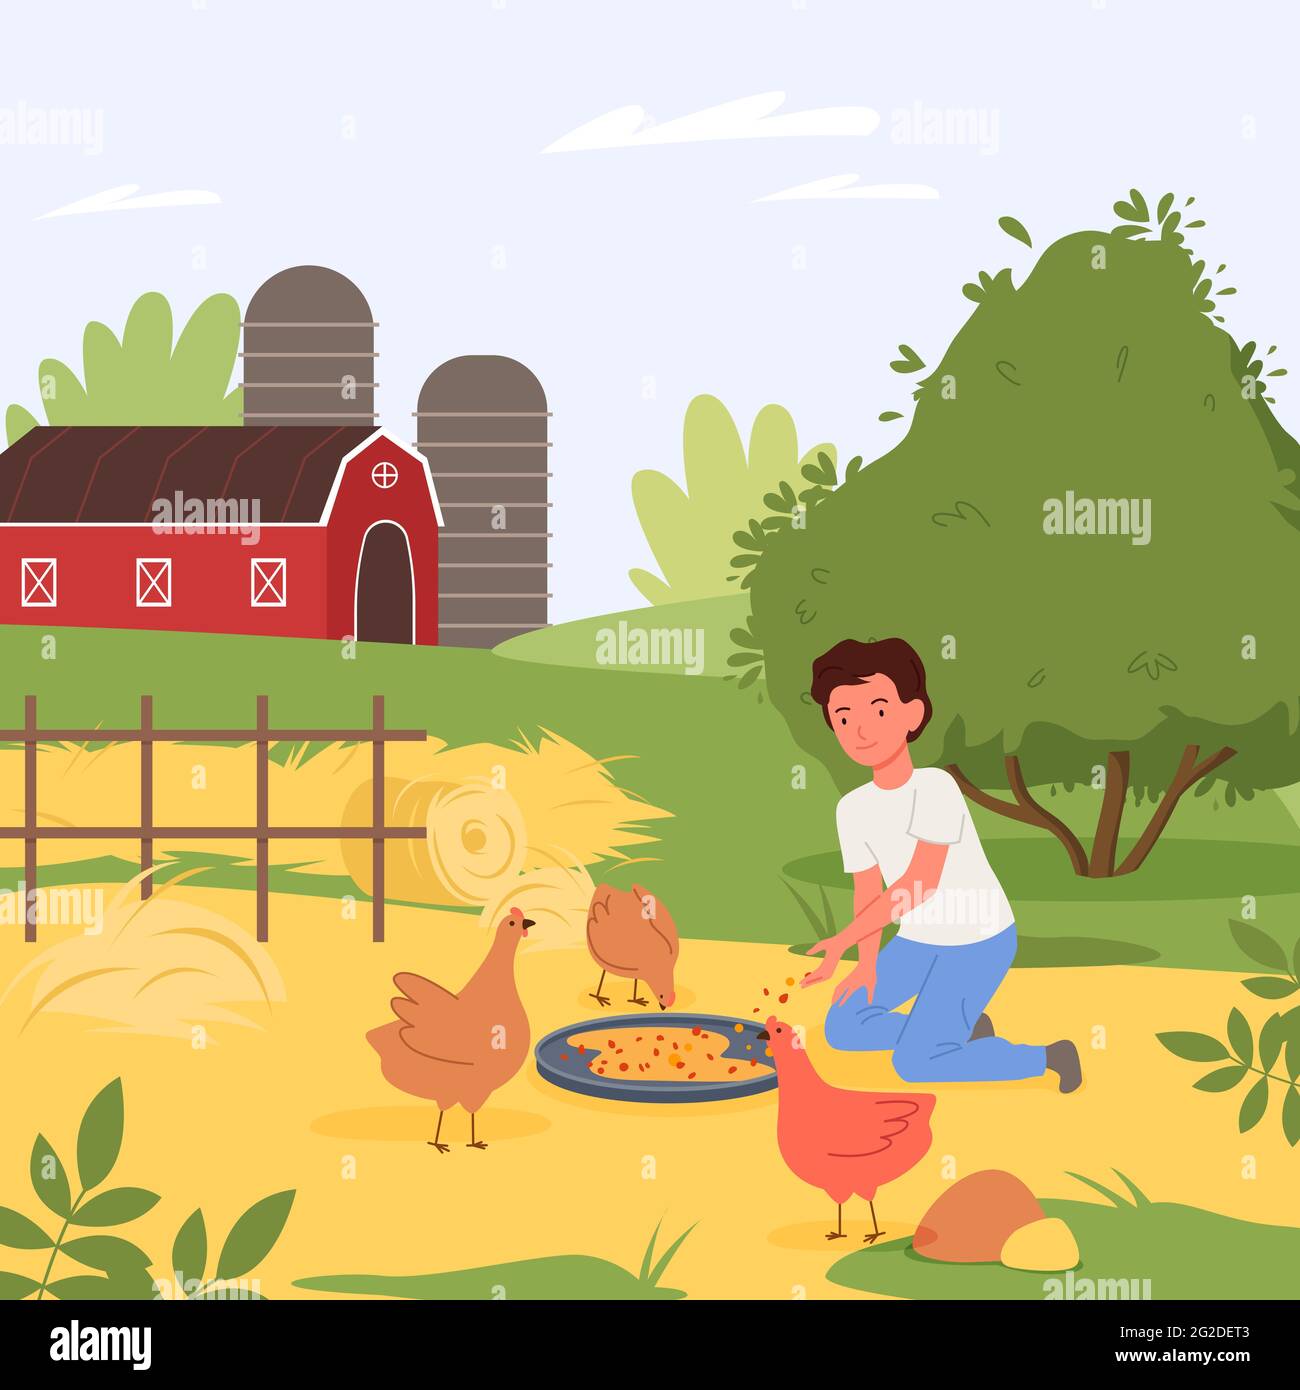 Alimentation des oiseaux de ferme, paysage de village, garçon heureux aidant à nourrir les poulets dans la cour de la ferme Illustration de Vecteur